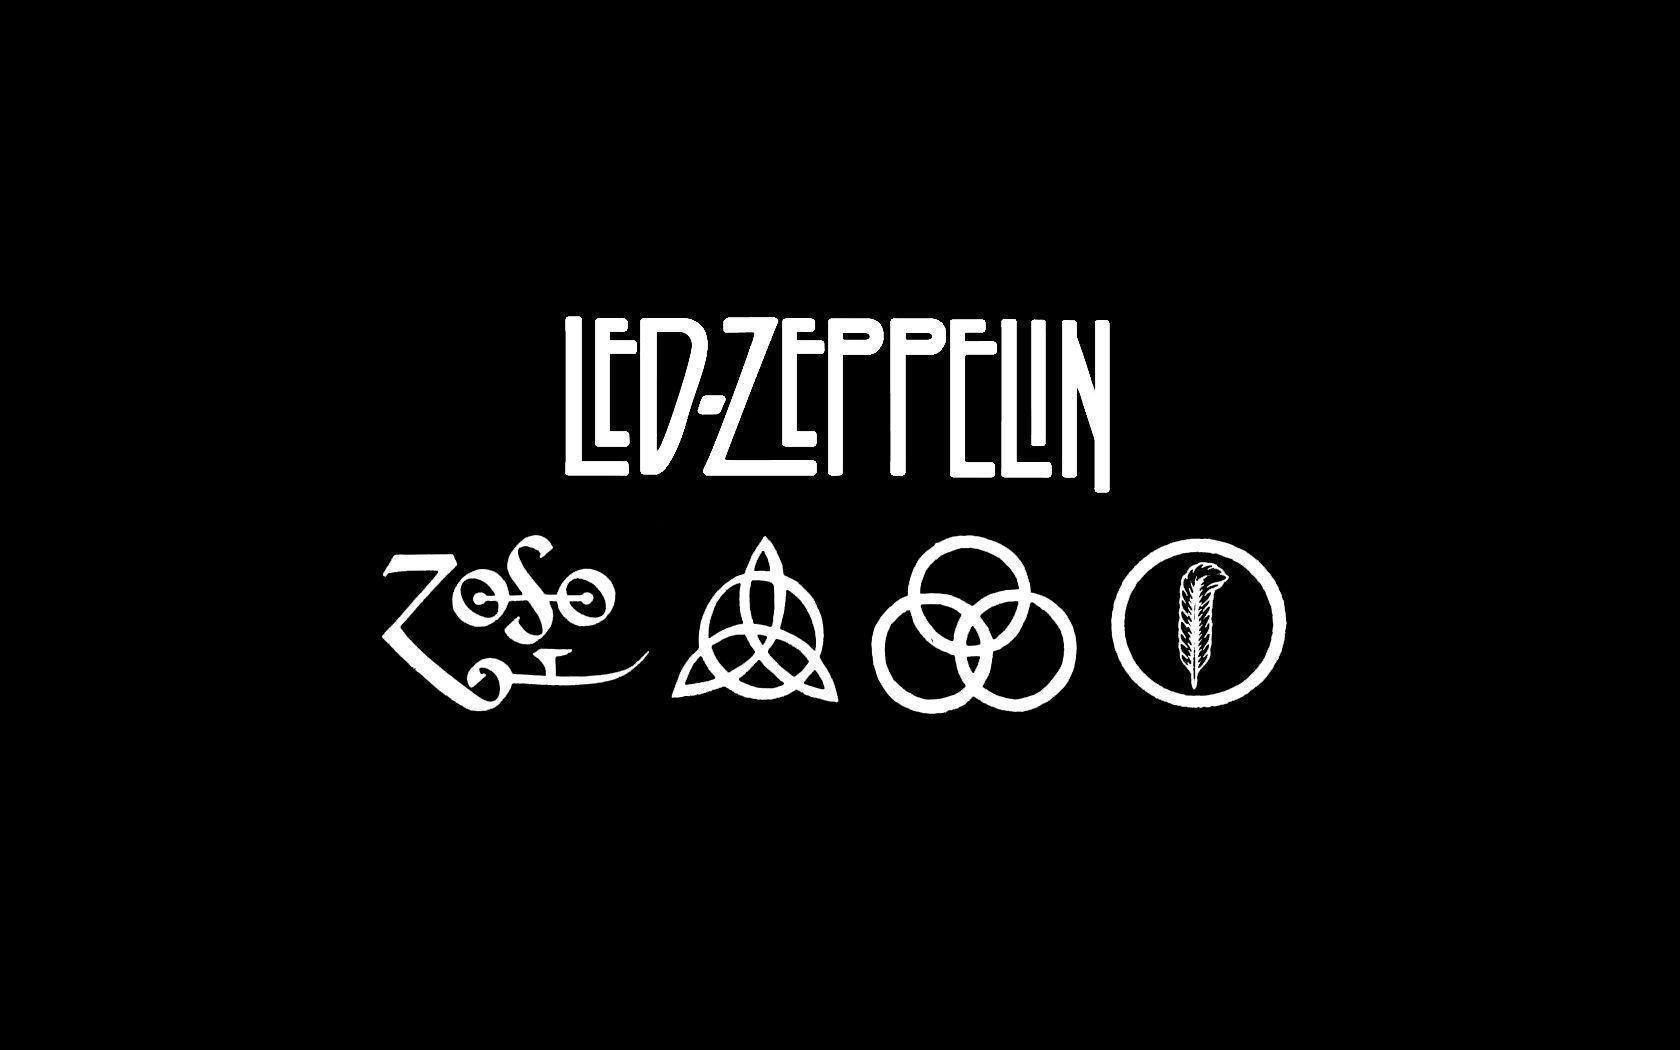 Led Zeppelin HD Wallpaper